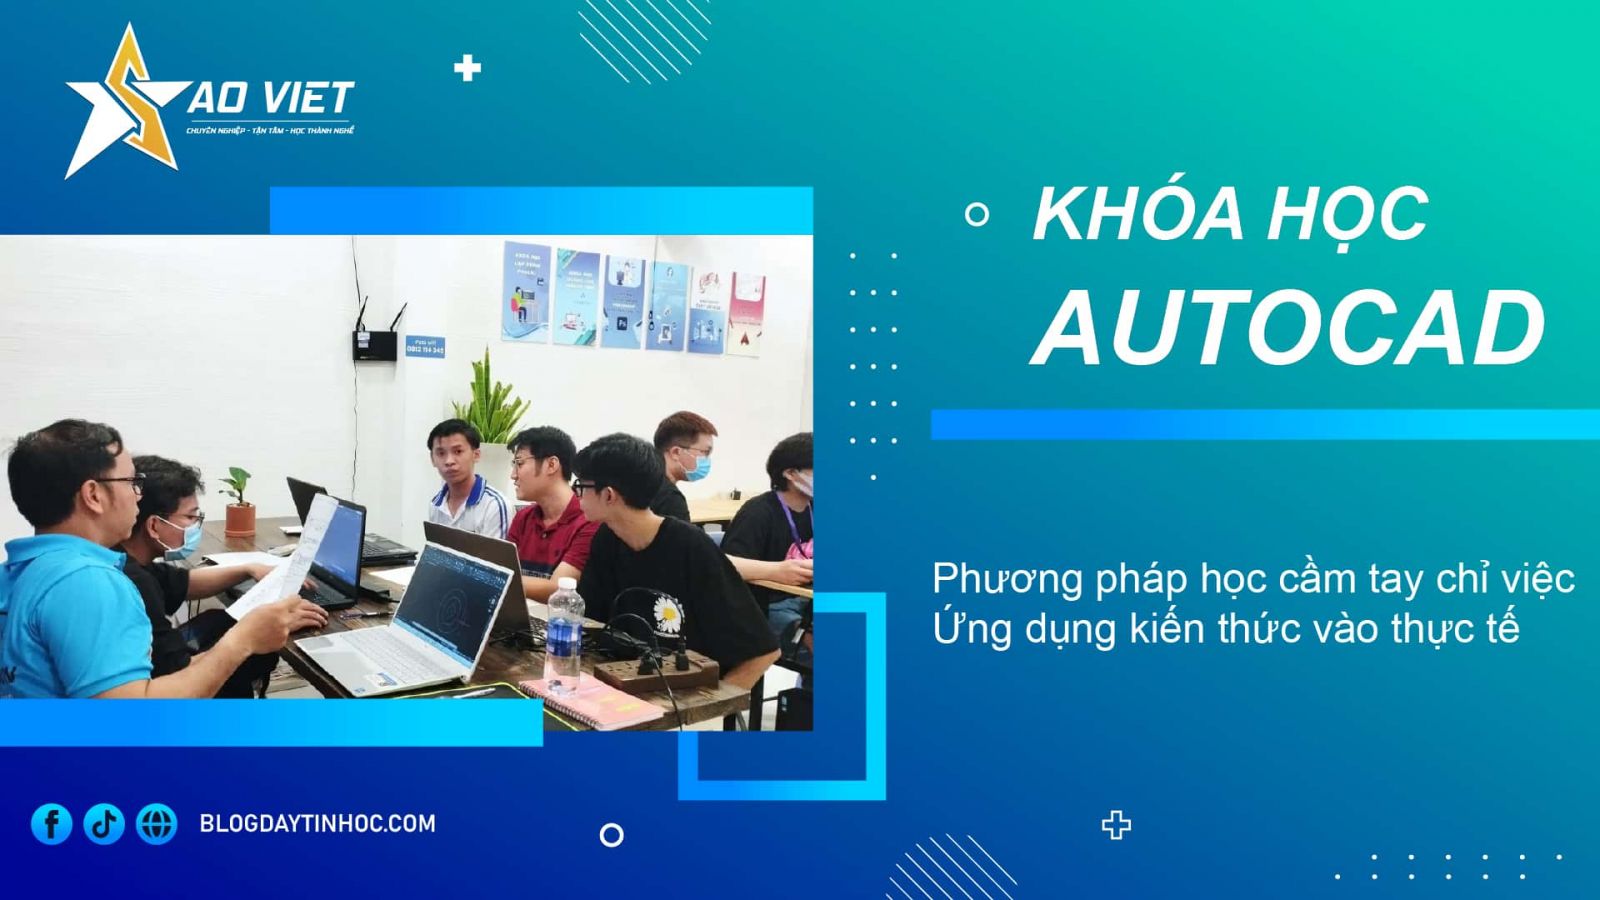 Khóa học vẽ AutoCAD ở Thanh Xuân Hà Nội cung cấp cho bạn kiến thức về vẽ kỹ thuật 2D và 3D, giúp bạn trở thành một chuyên gia trong lĩnh vực này. Trong khóa học, bạn sẽ được học từ những giáo viên chuyên nghiệp và trải nghiệm các phương pháp học tập hiệu quả nhất để trở thành một chuyên gia về vẽ kỹ thuật.